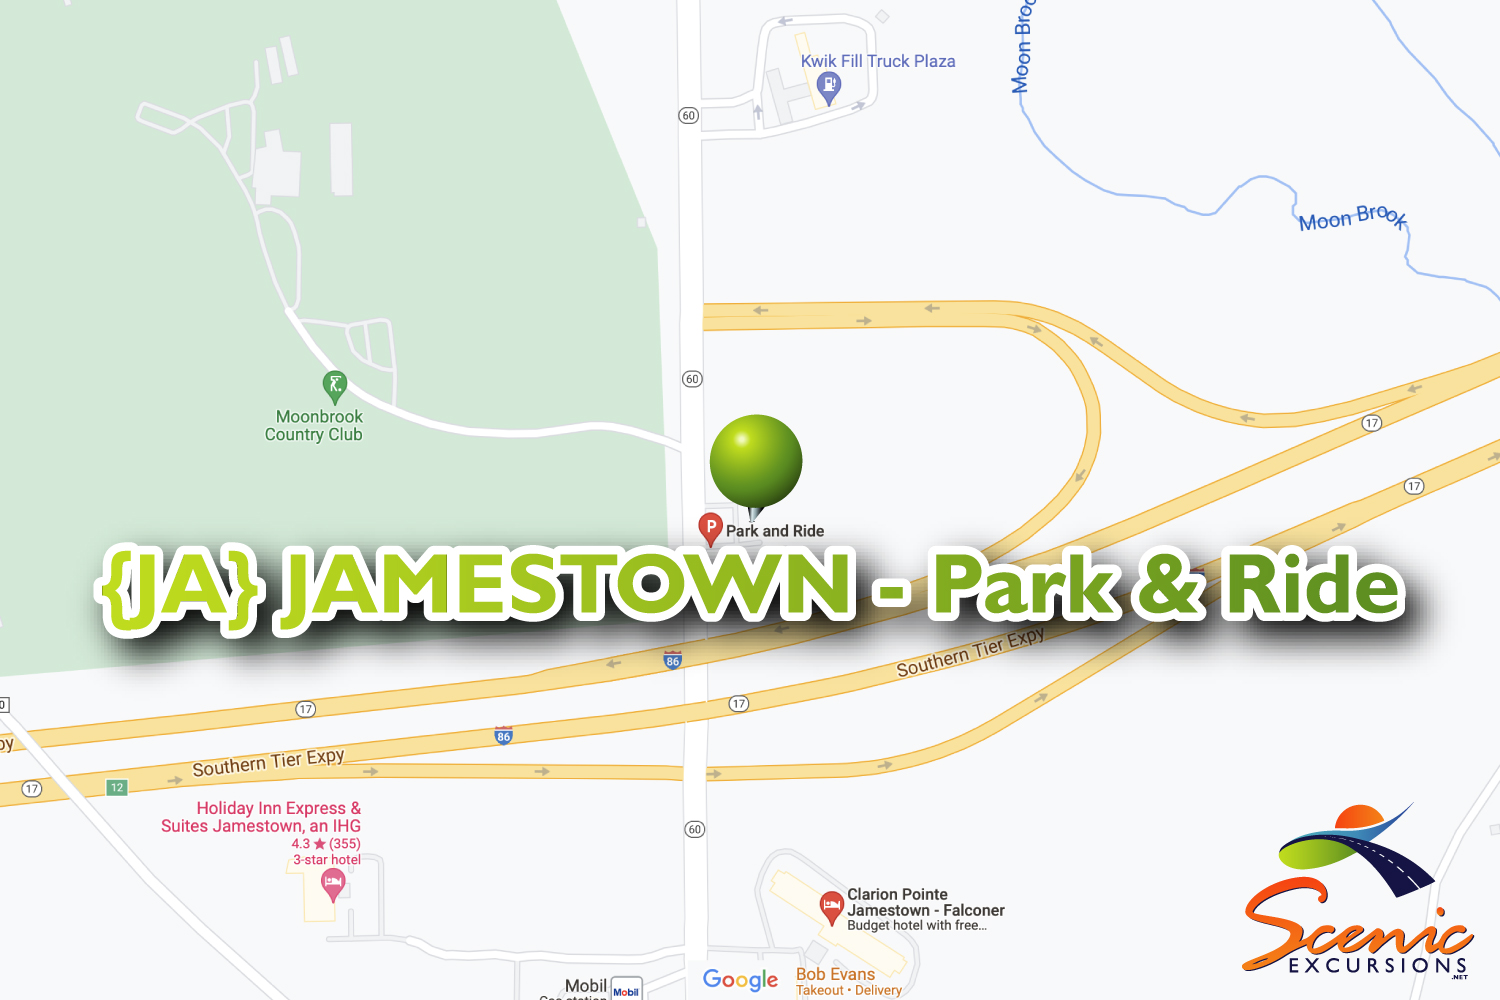 {JA} JAMESTOWN - Park & Ride